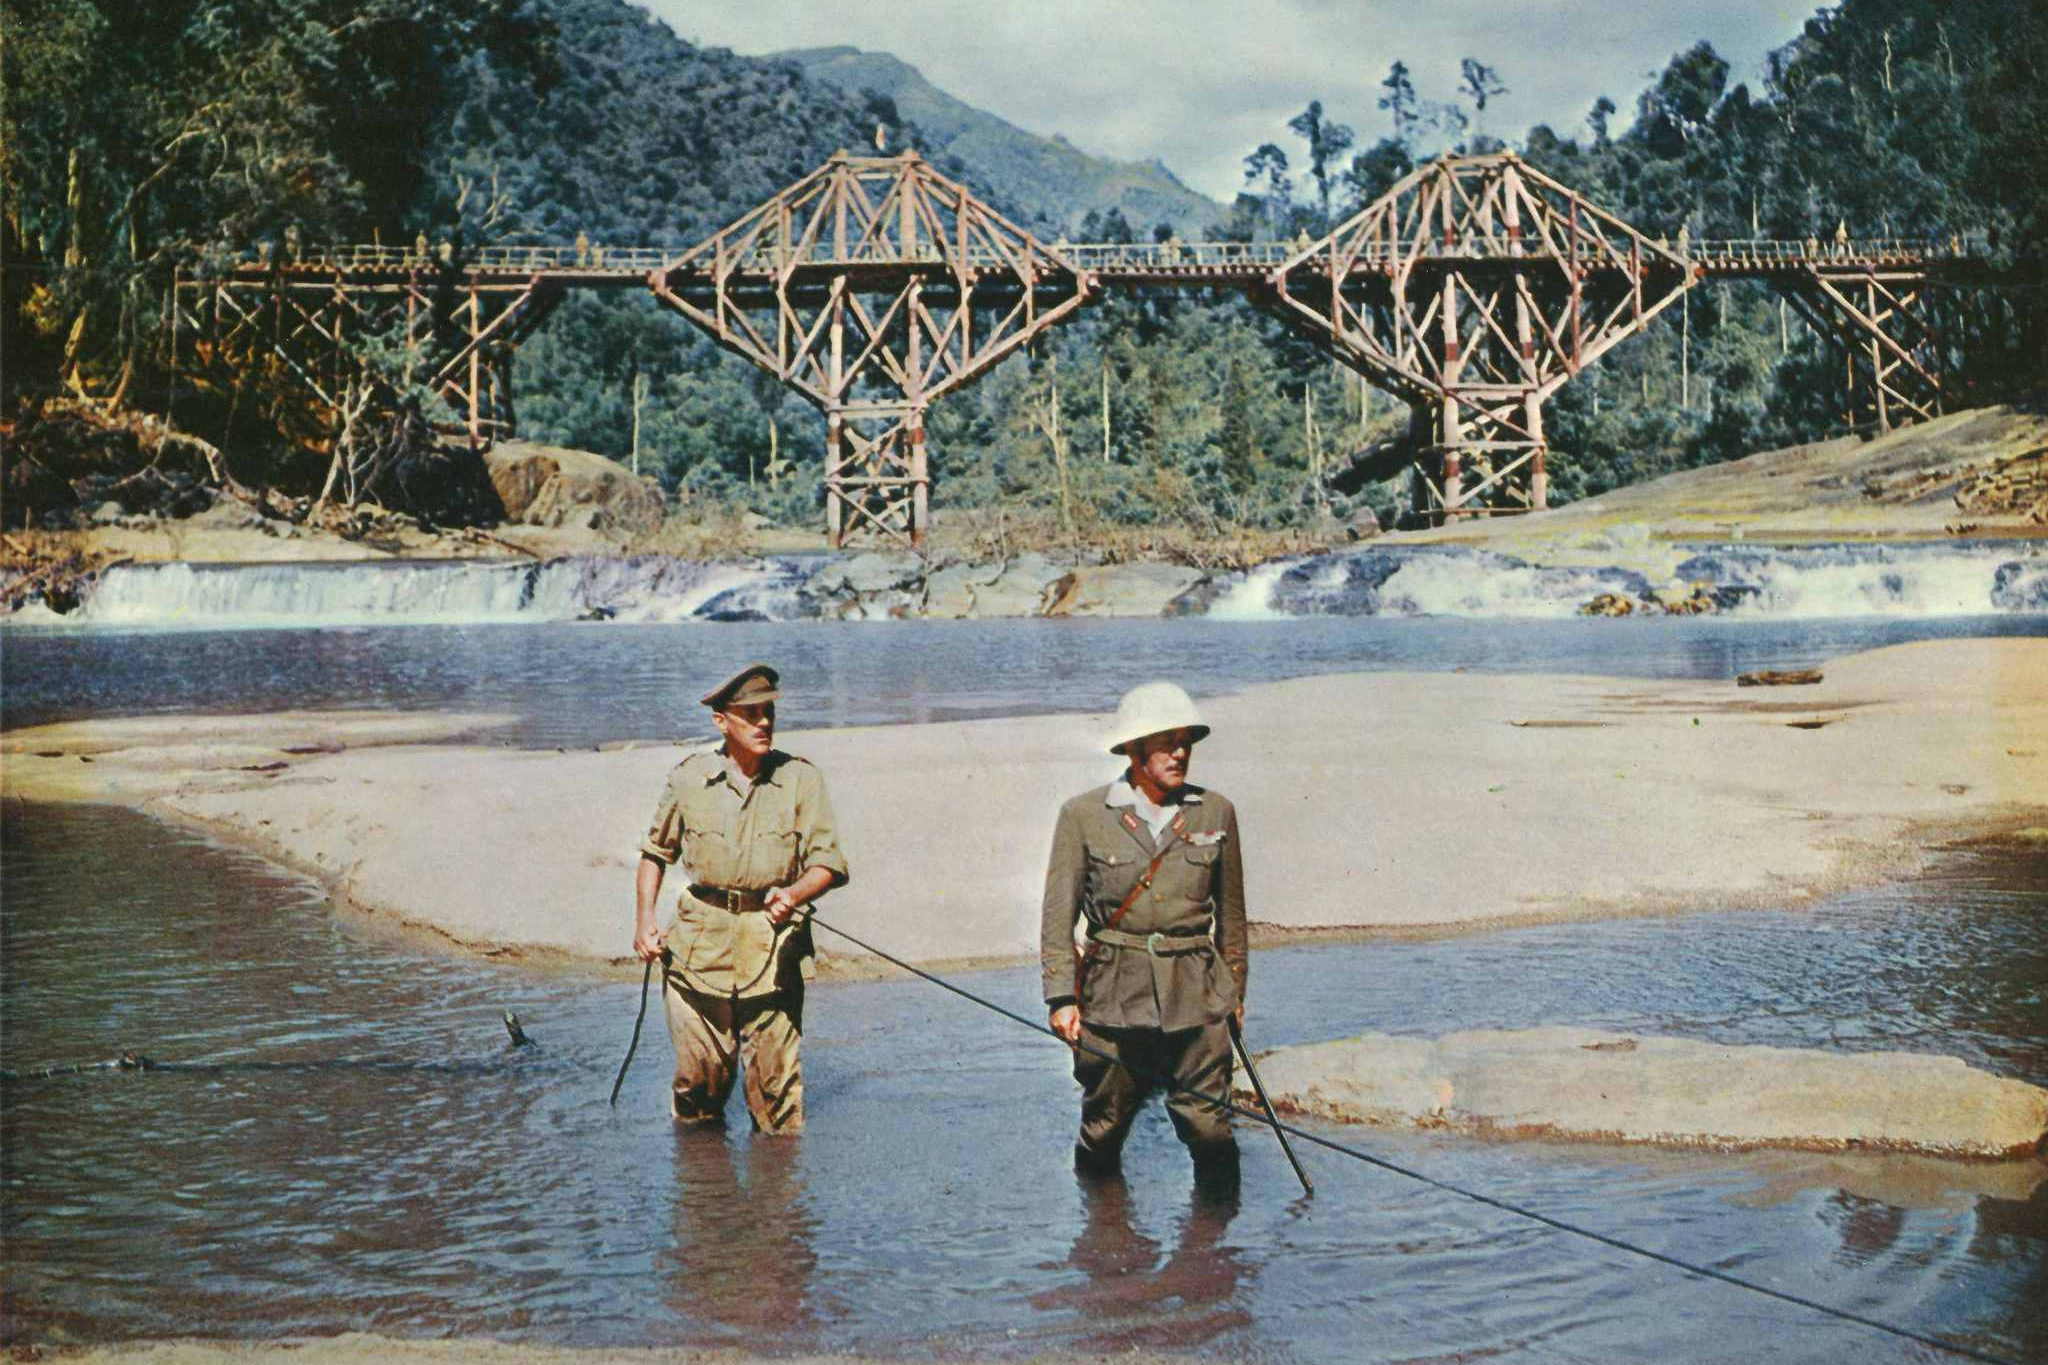 Colonel Nicholson (left) and Colonel Saito (right) in The Bridge on the River Kwai.